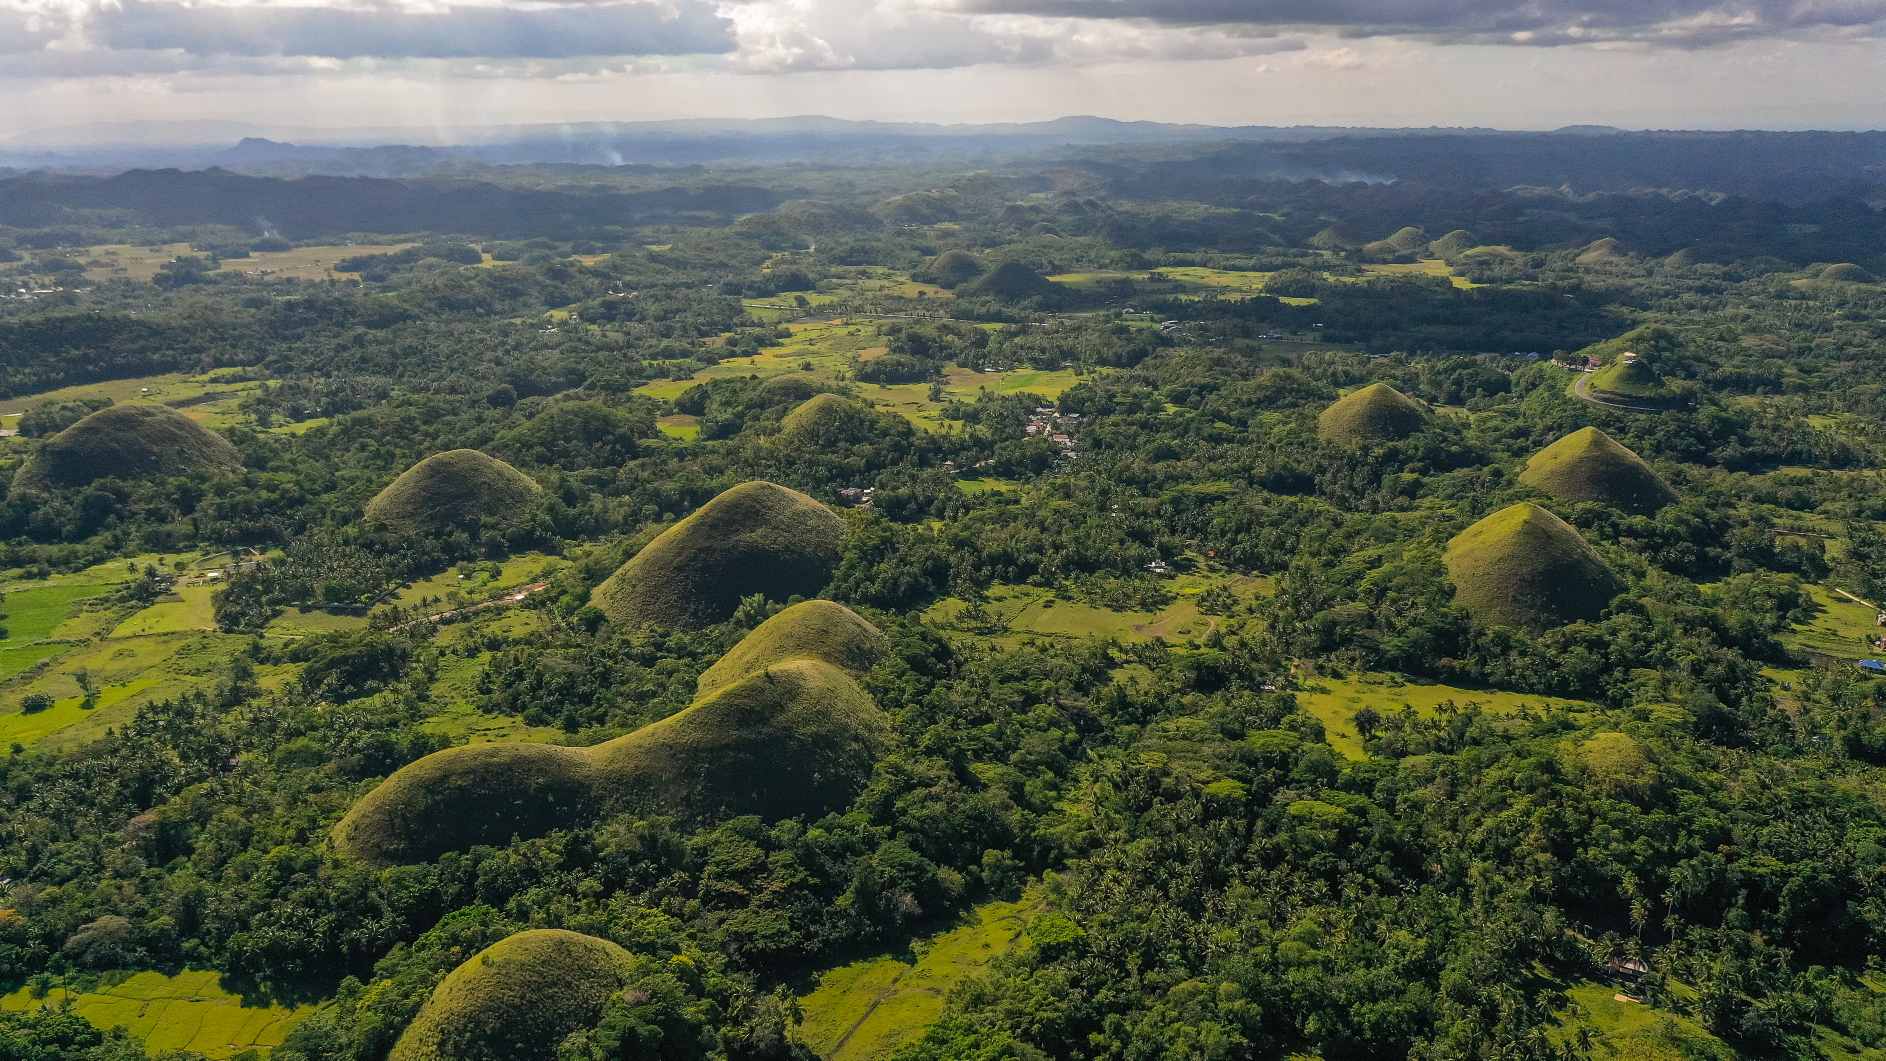 Dombok mezőgazdasági területek között. Chocolate Hills természetes mérföldkő, Bohol-sziget, Fülöp-szigetek. © Kép forrása: Alekszej Kornyiljev | A DreamsTime licence, azonosító: 223476330